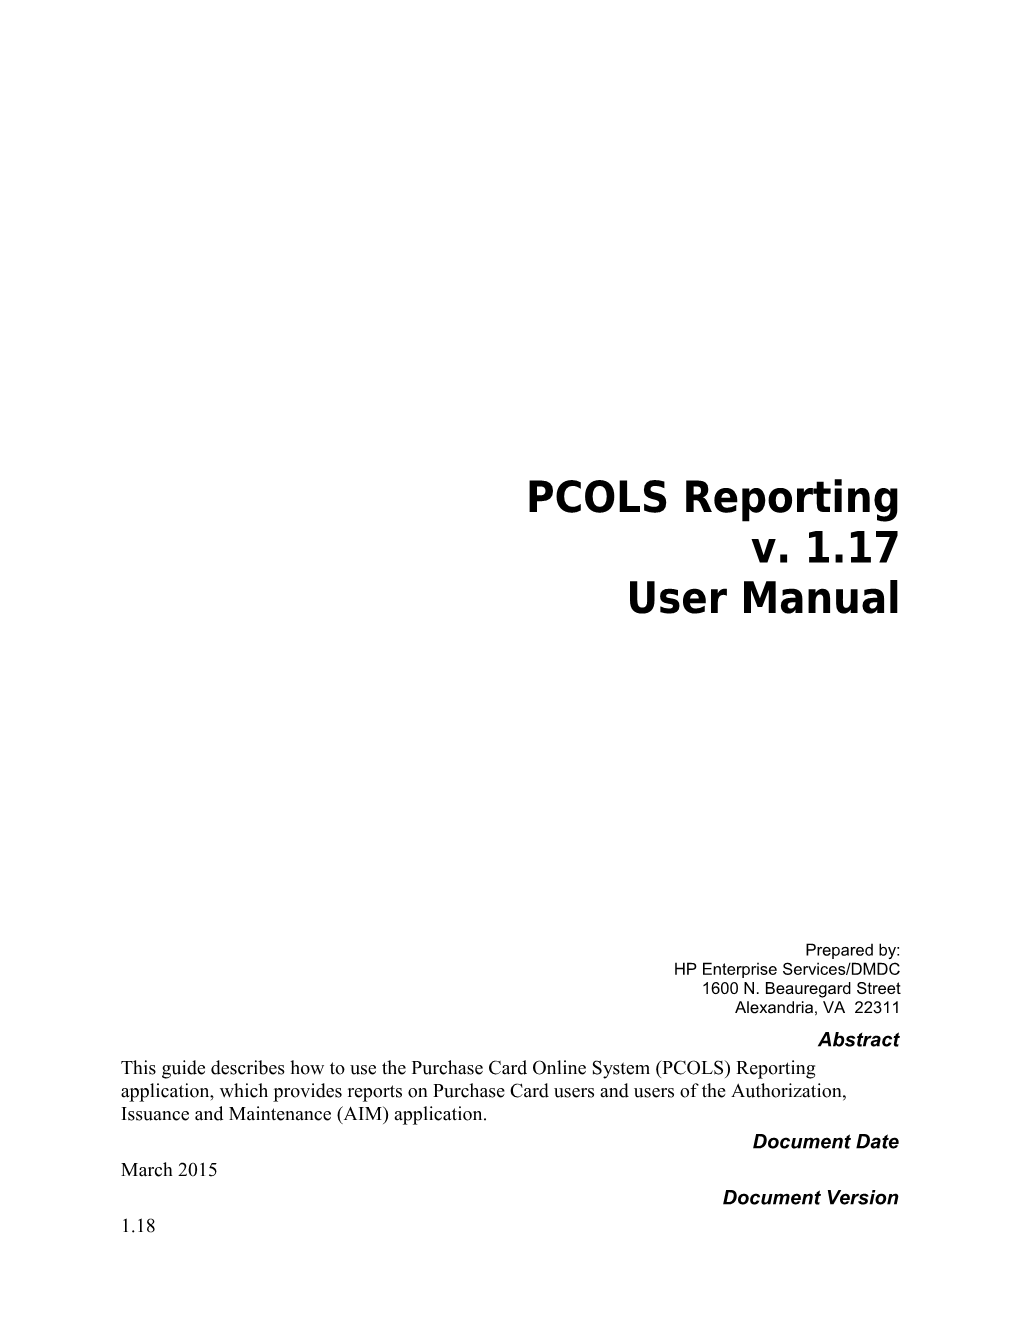 PCOLS Reporting V1.18 User Manual